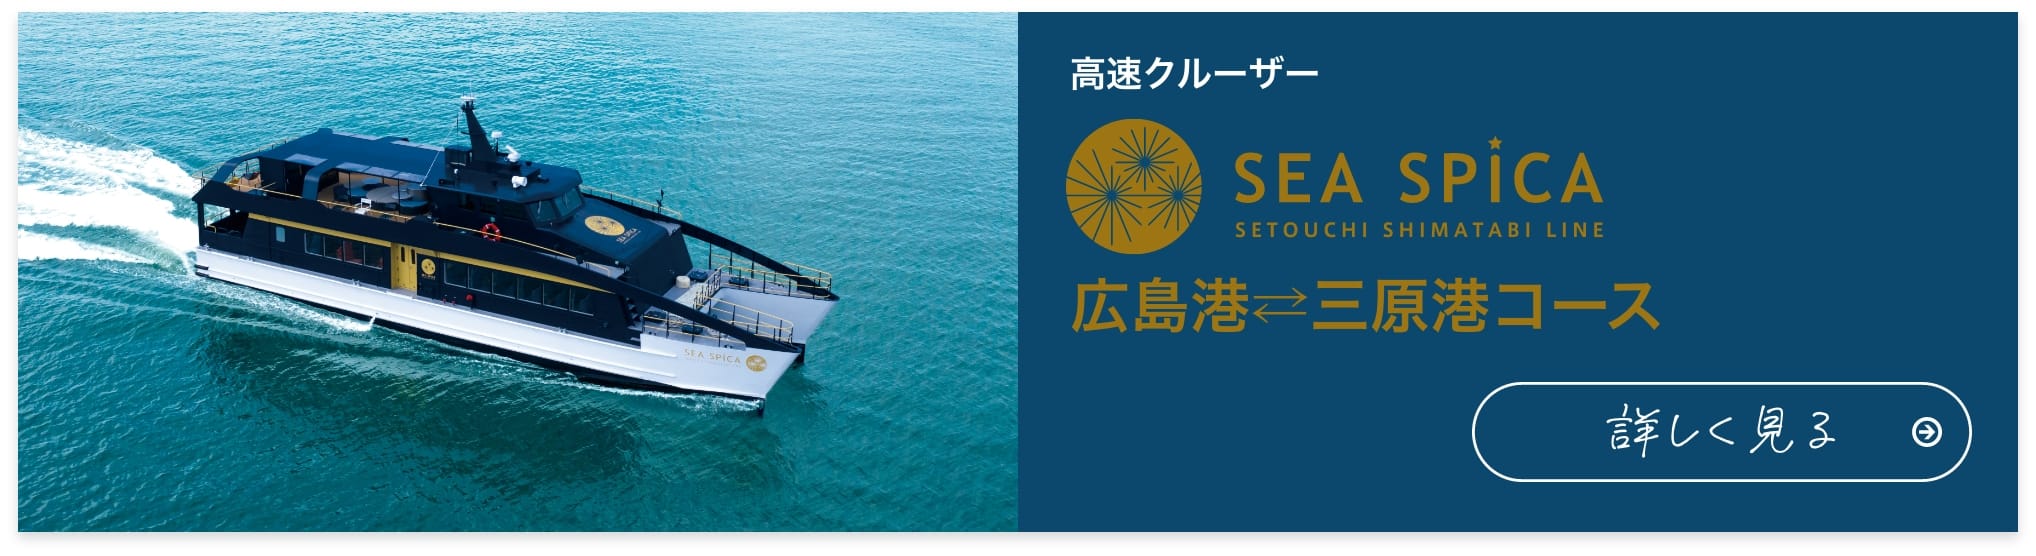 高速クルーザー SEA SPICA 広島港 三原港コース